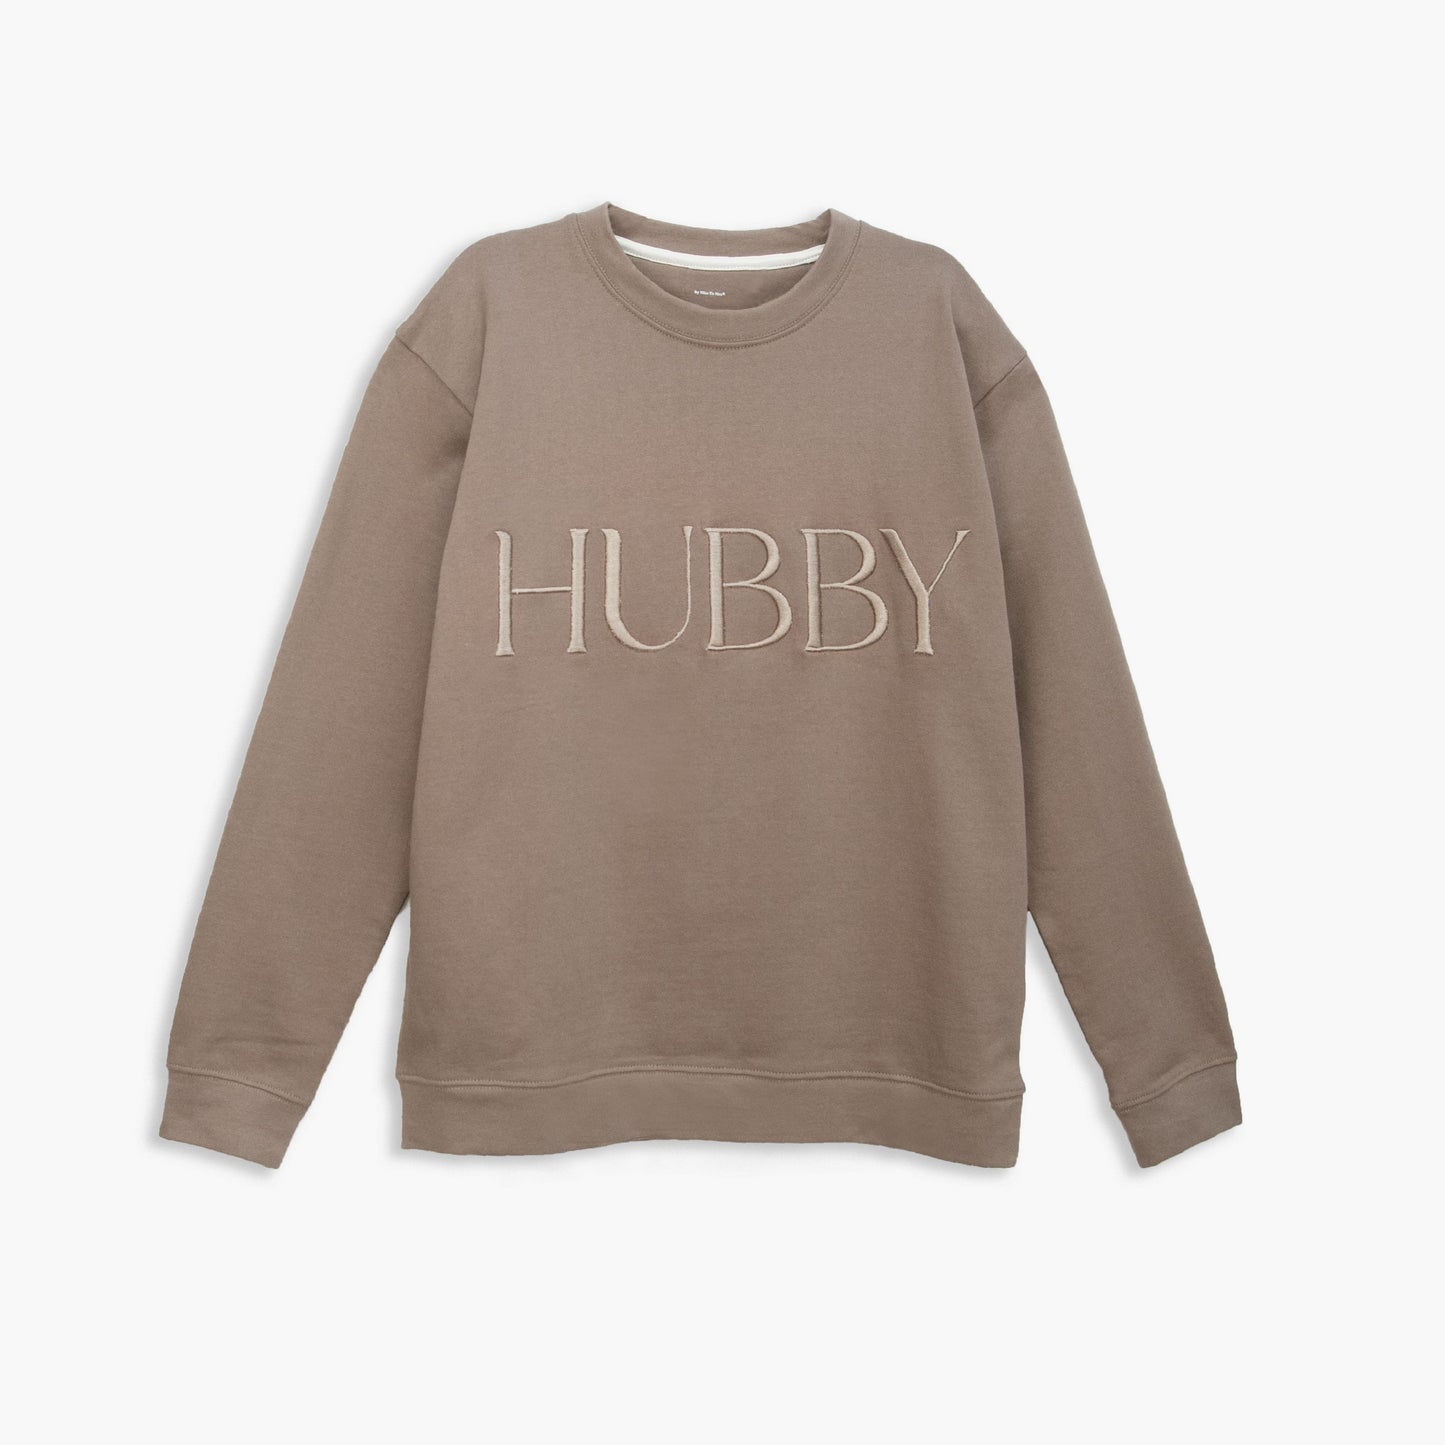 Hubby Embroidered Sweatshirt - Mocha